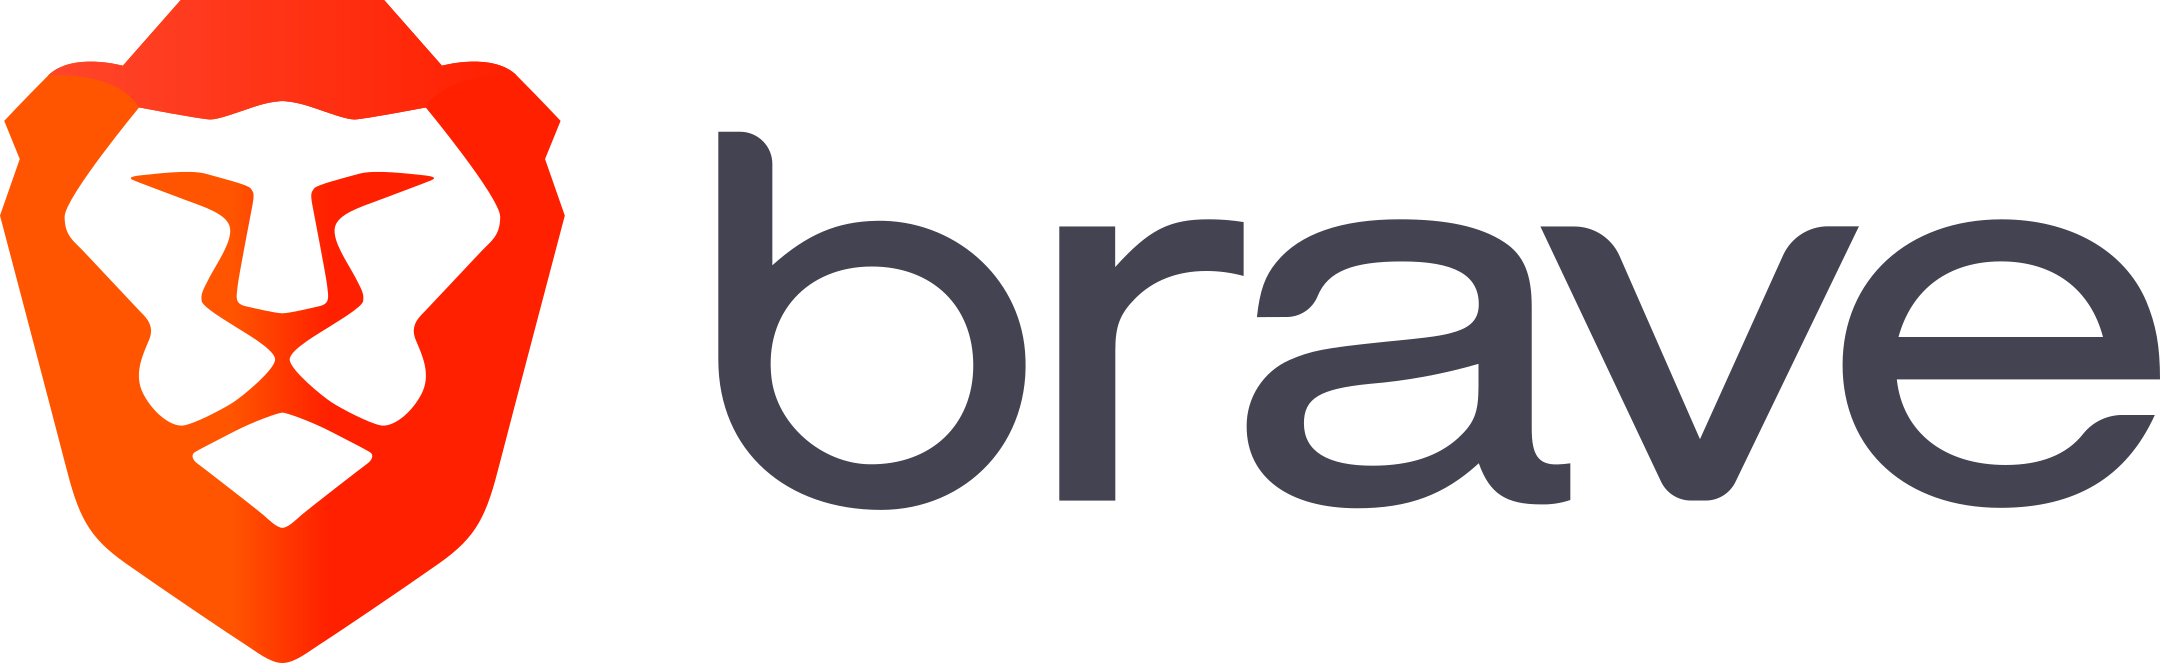 brave logo 2 - Brave Logo